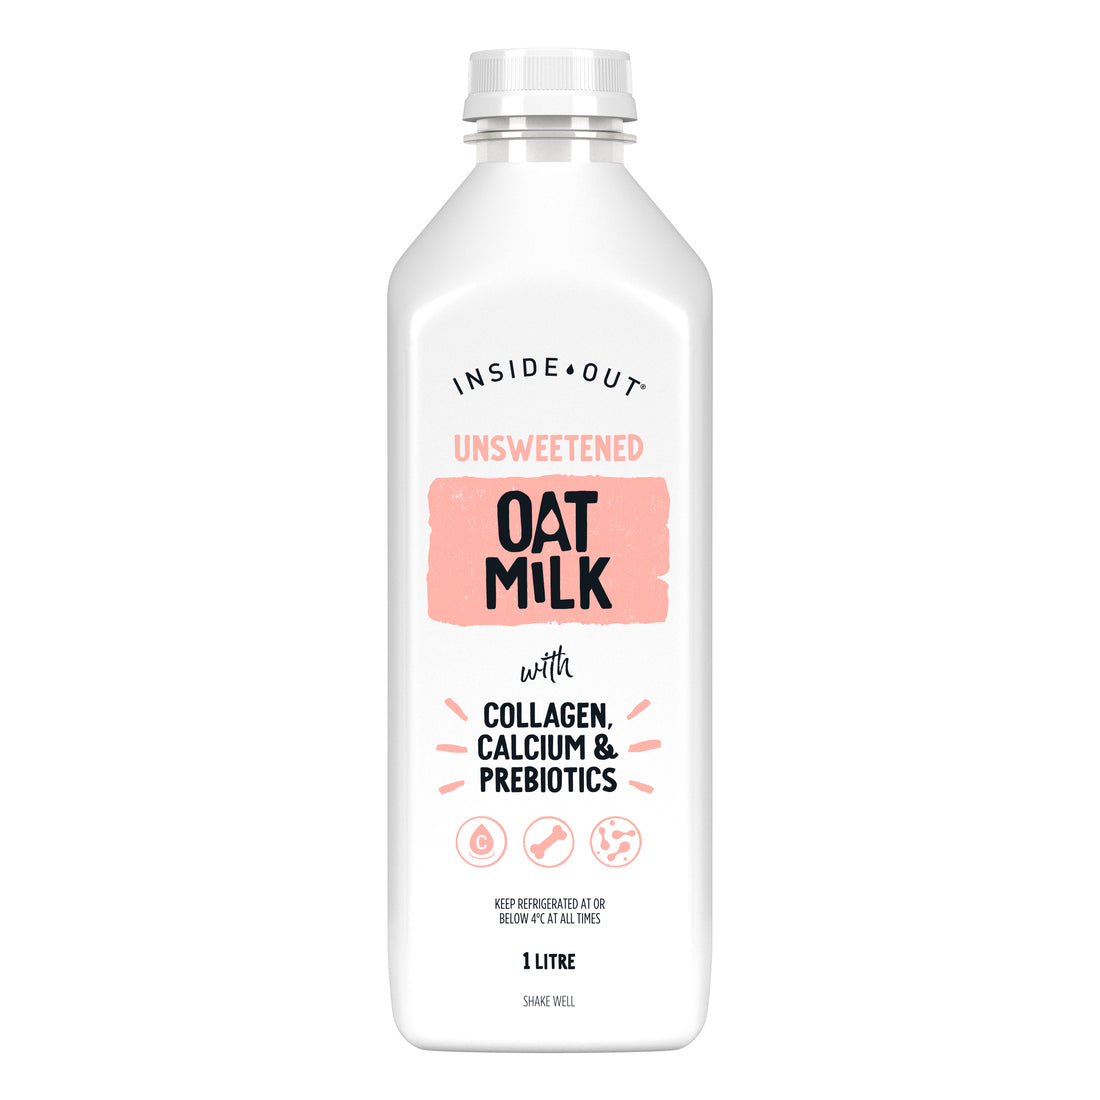 Unsweetened Oat Milk 1L with Collagen, Calcium & Prebiotics